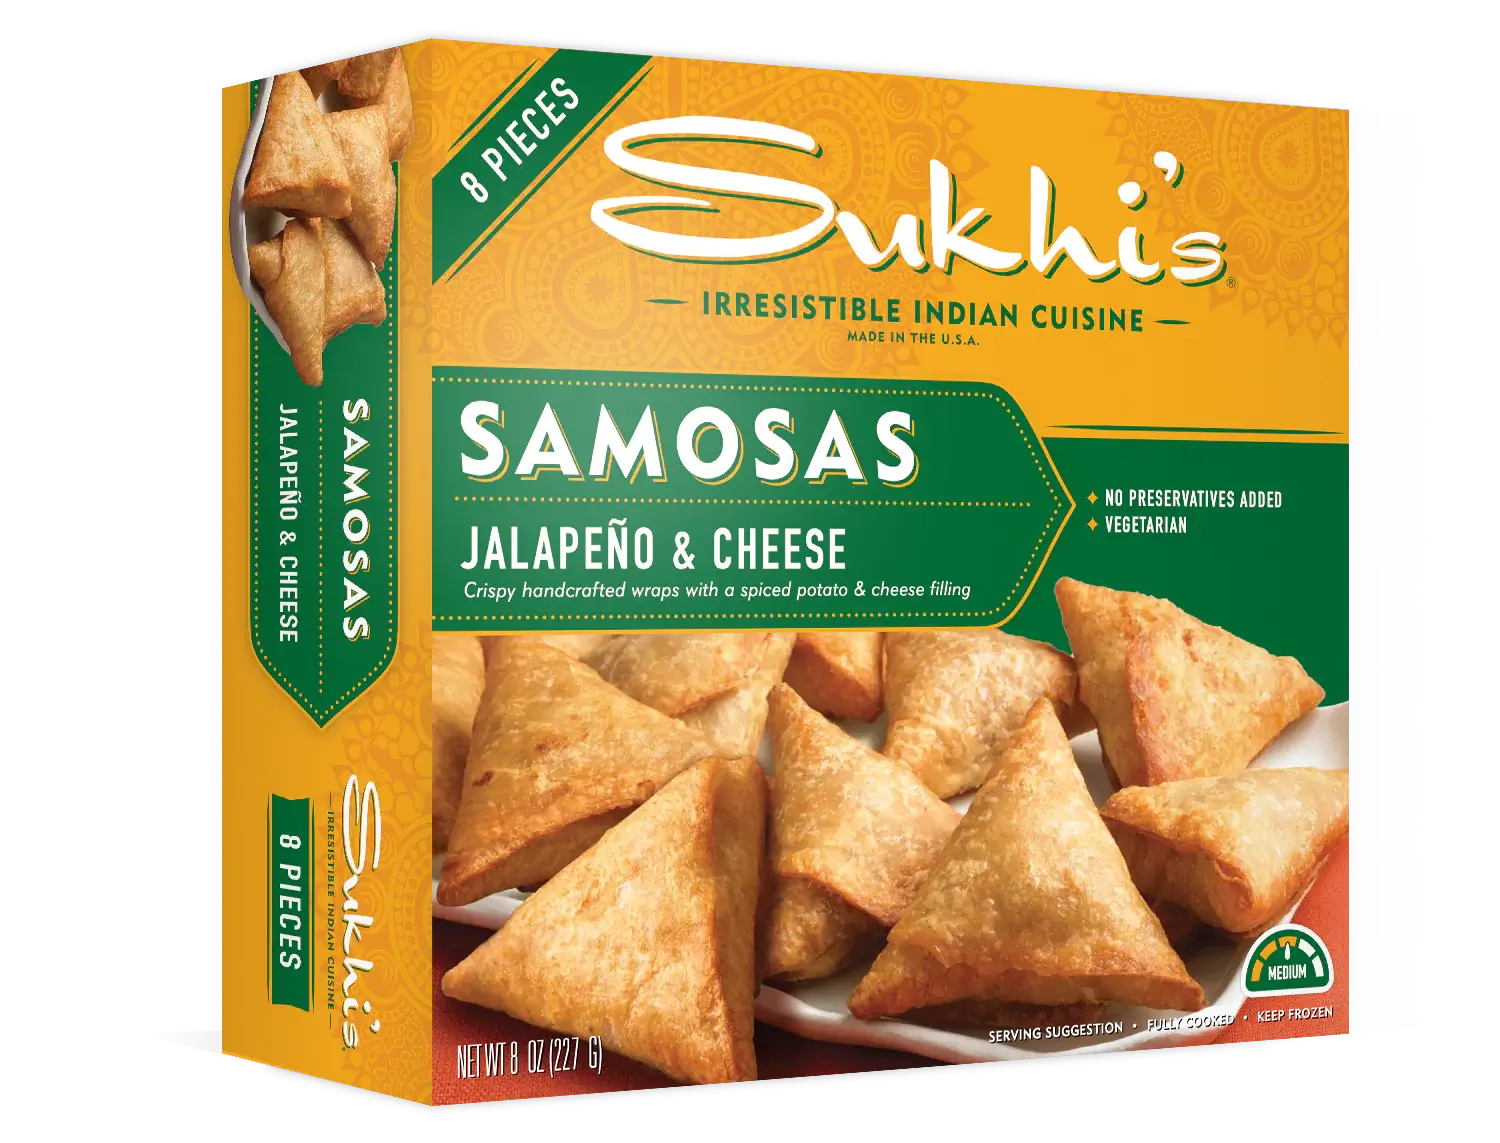 Jalapeño & Cheese Samosas